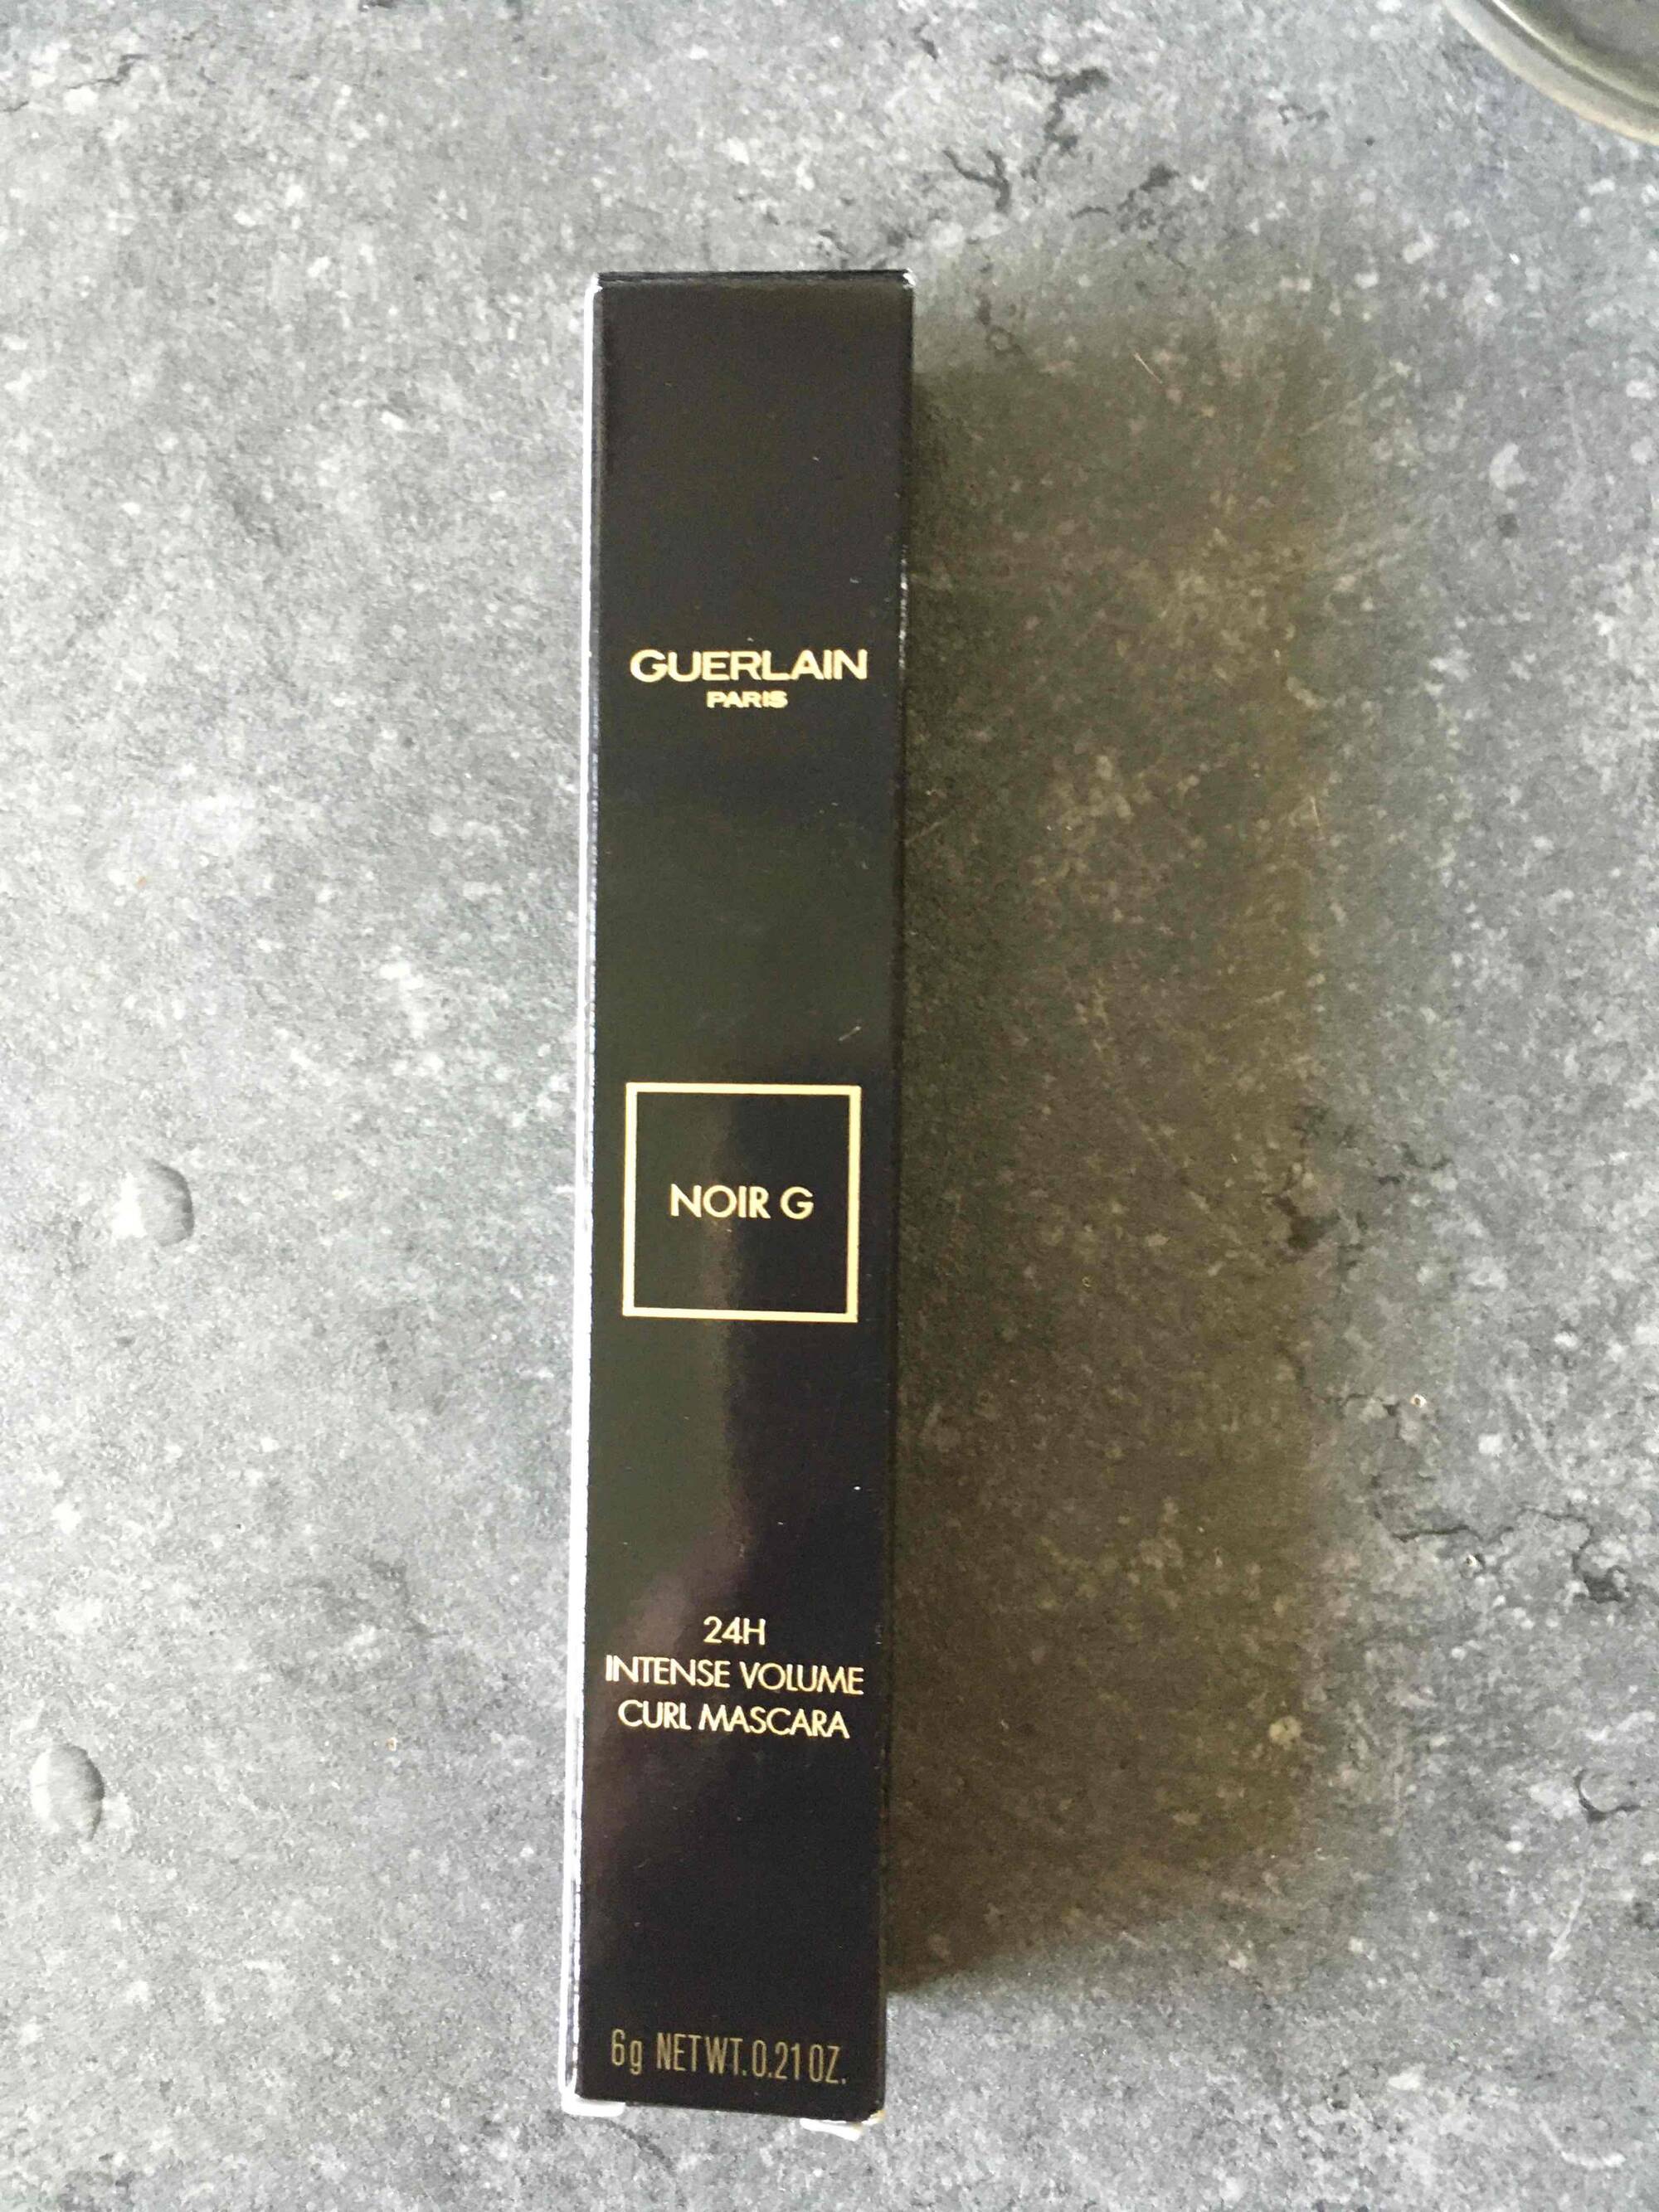 GUERLAIN - Noir G - 24h intense volume curl mascara